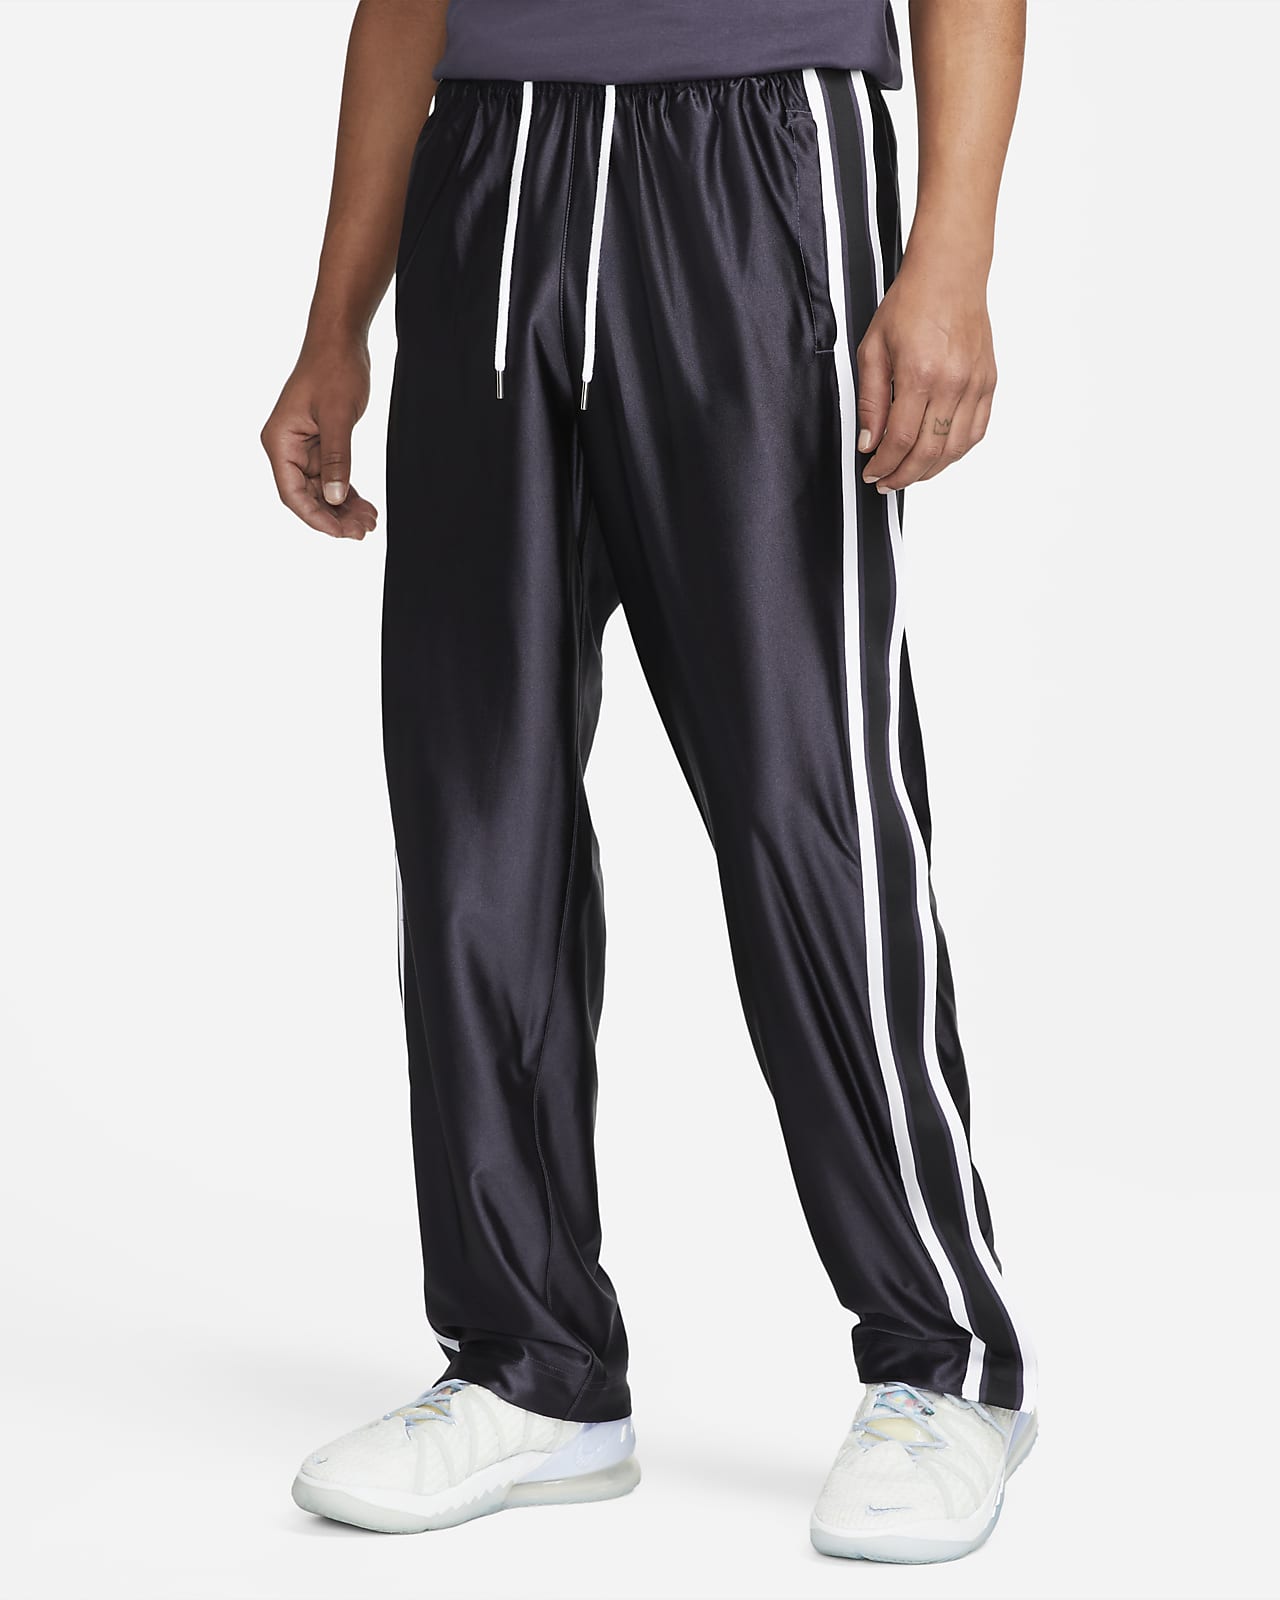 Buy NBA Lifestyle Tear Away Pants SAN ANTONIO SPURS for N/A 0.0 on  KICKZ.com!